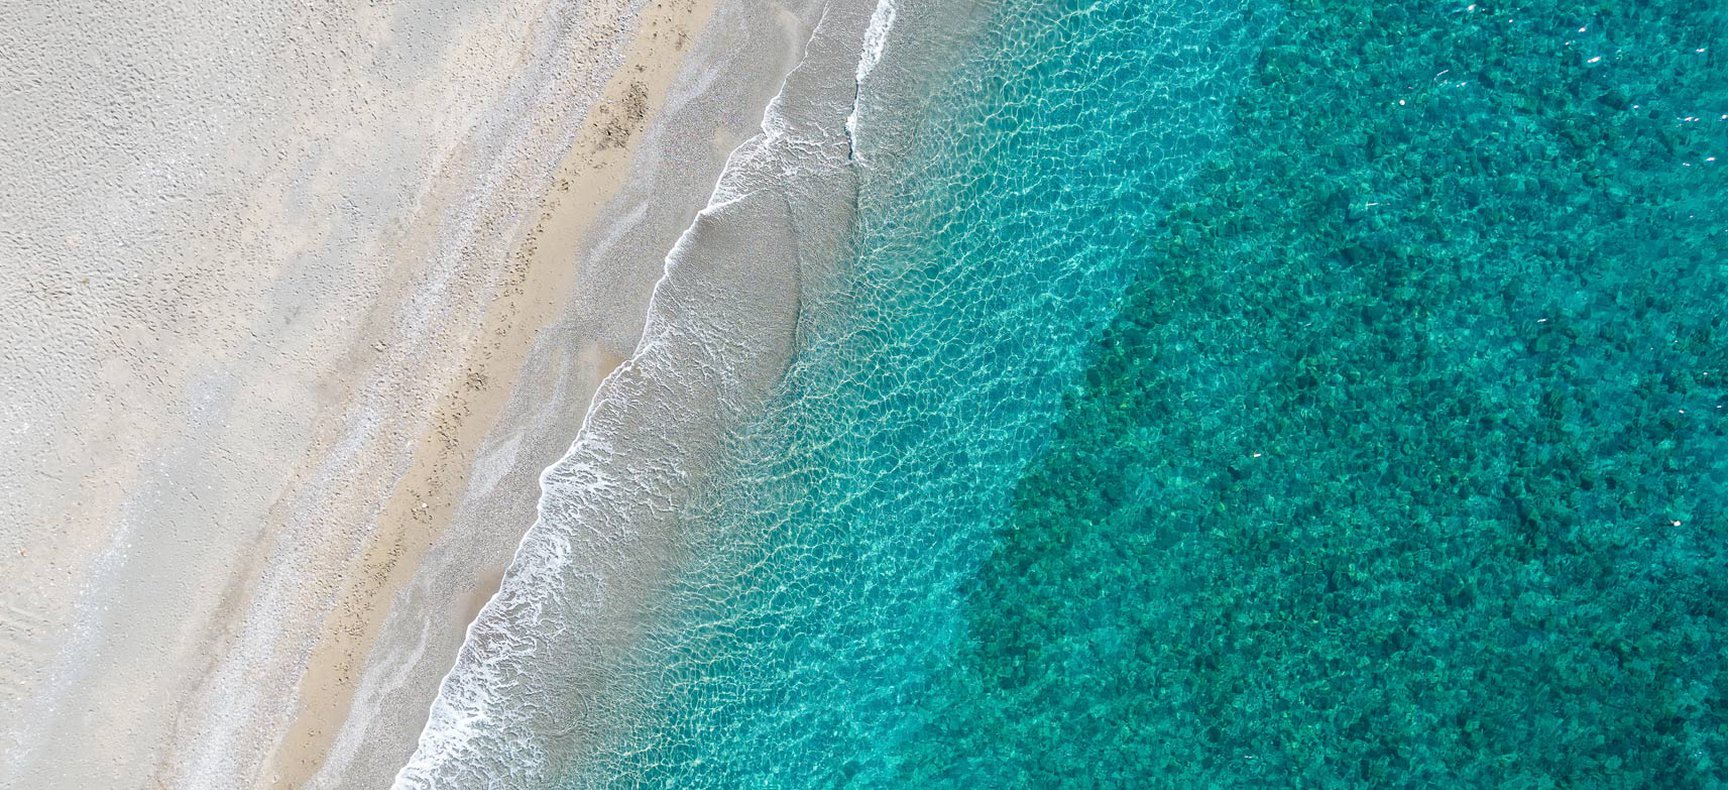 Παραλία με χρυσαφένια άμμο στην Κρήτη